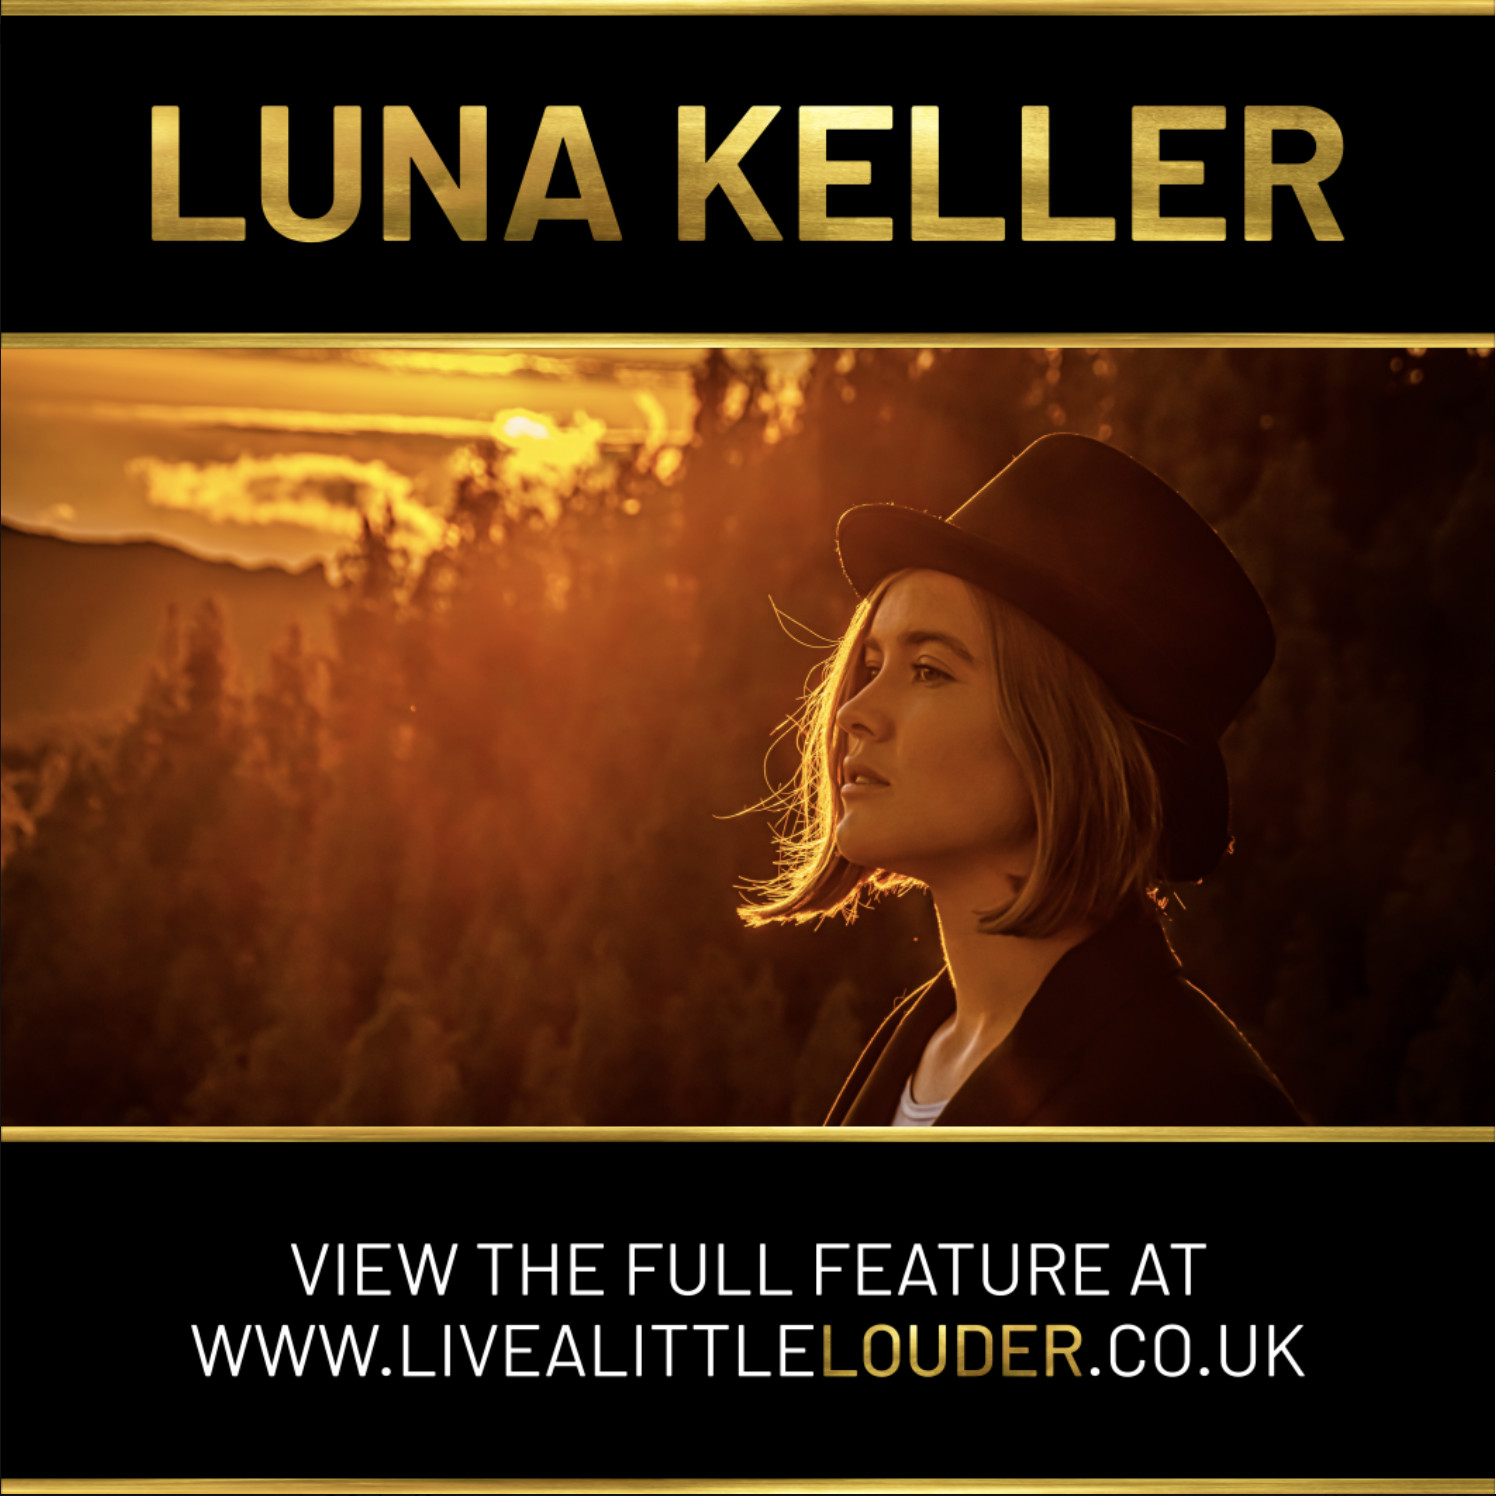 Live a little louder - Luna Keller